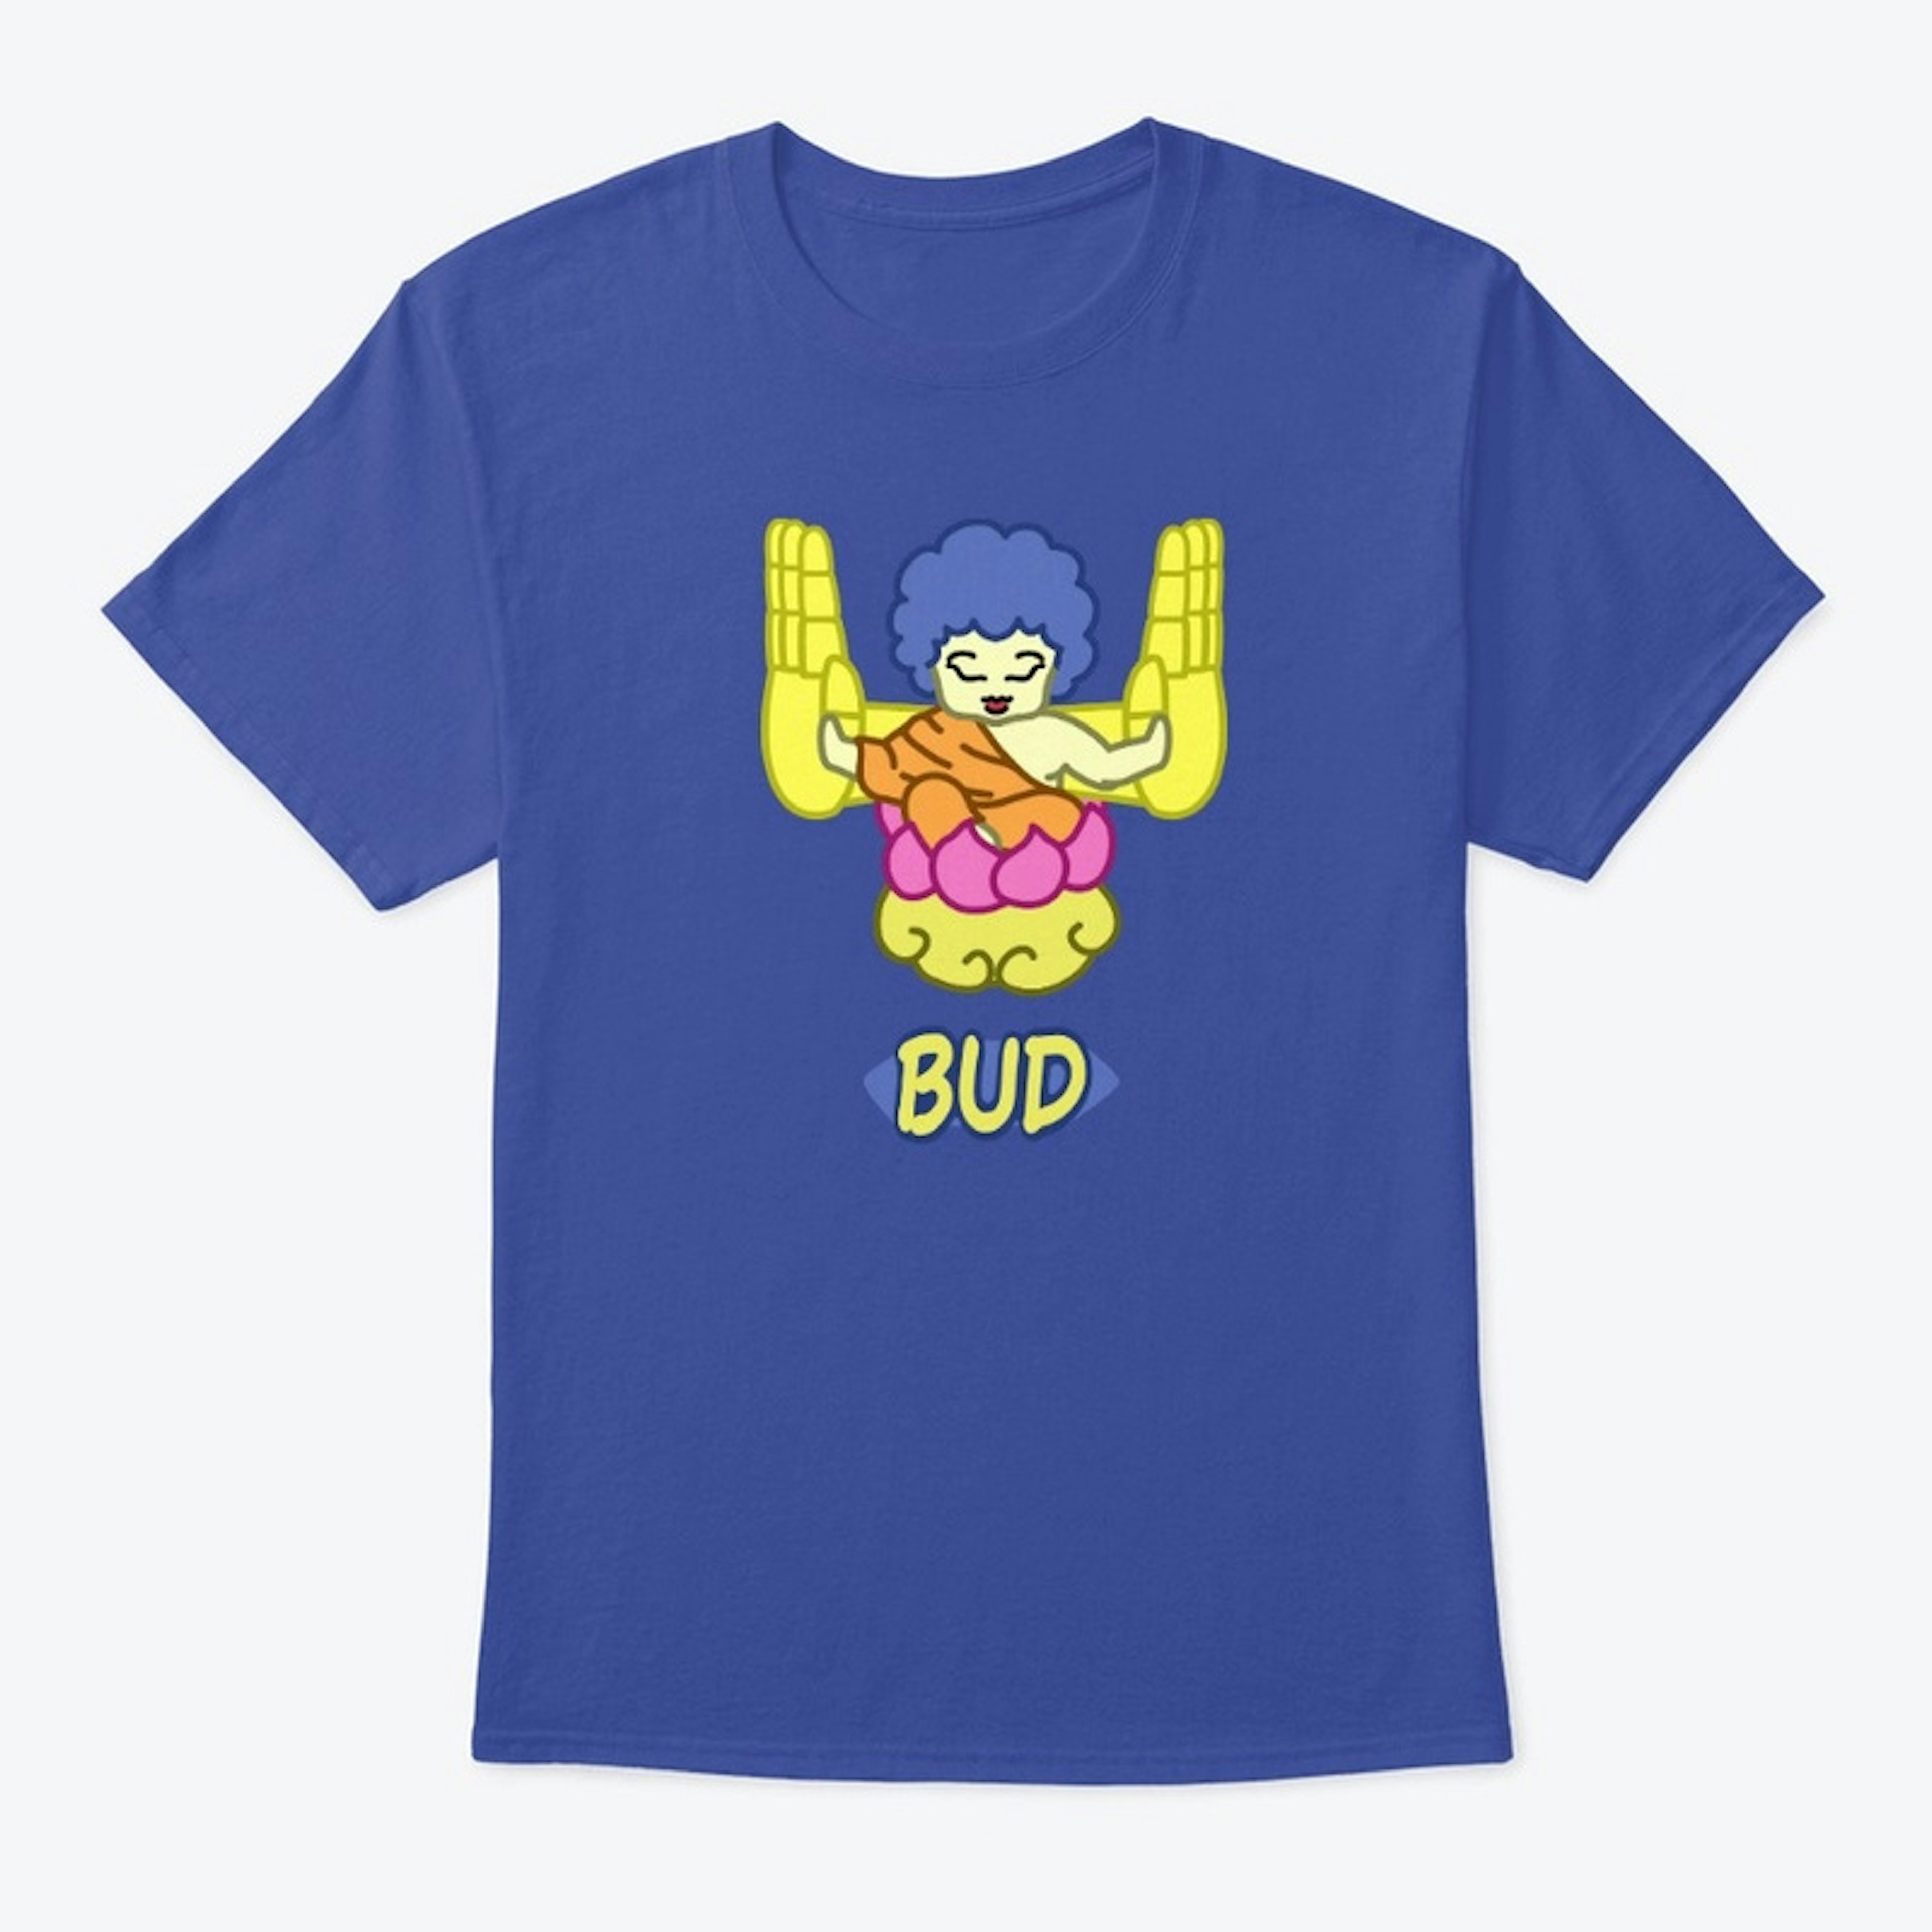 Bud Shirt + Logo on back